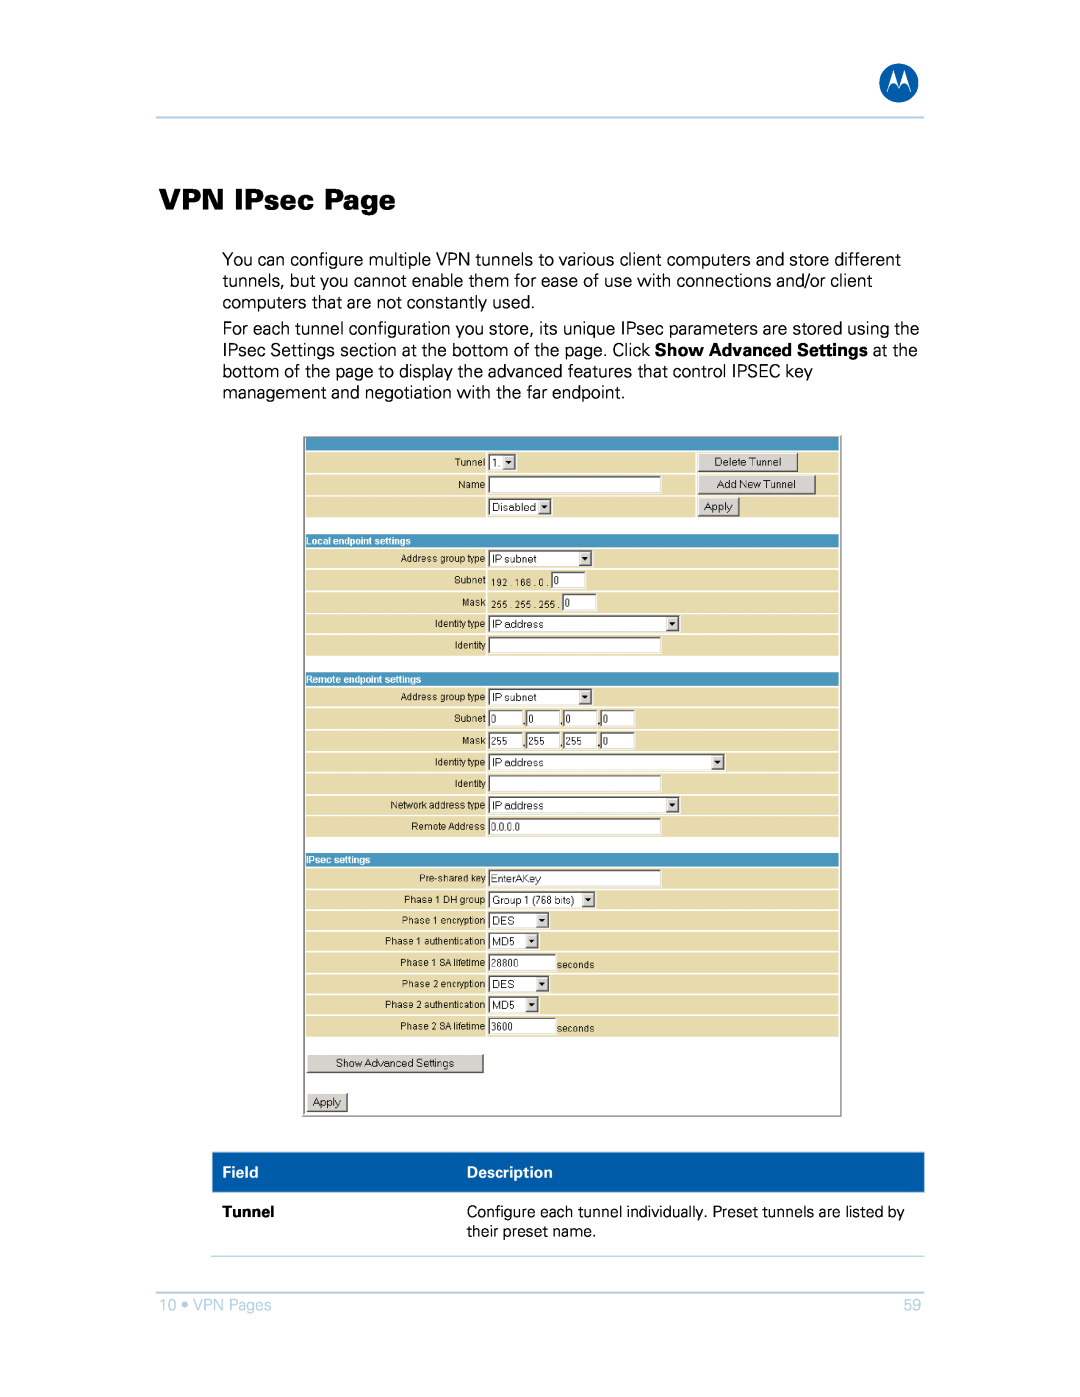 Motorola SVG1501E, SVG1501UE manual VPN IPsec Page, VPN Pages 